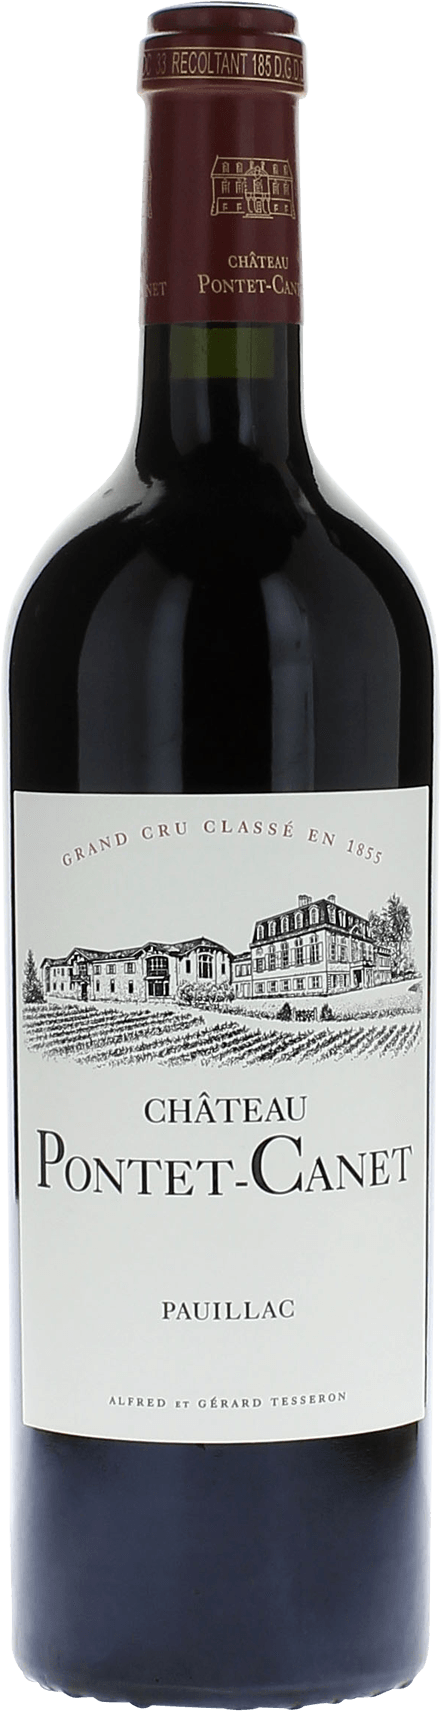 Pontet canet 2003 5me Grand cru class Pauillac, Bordeaux rouge